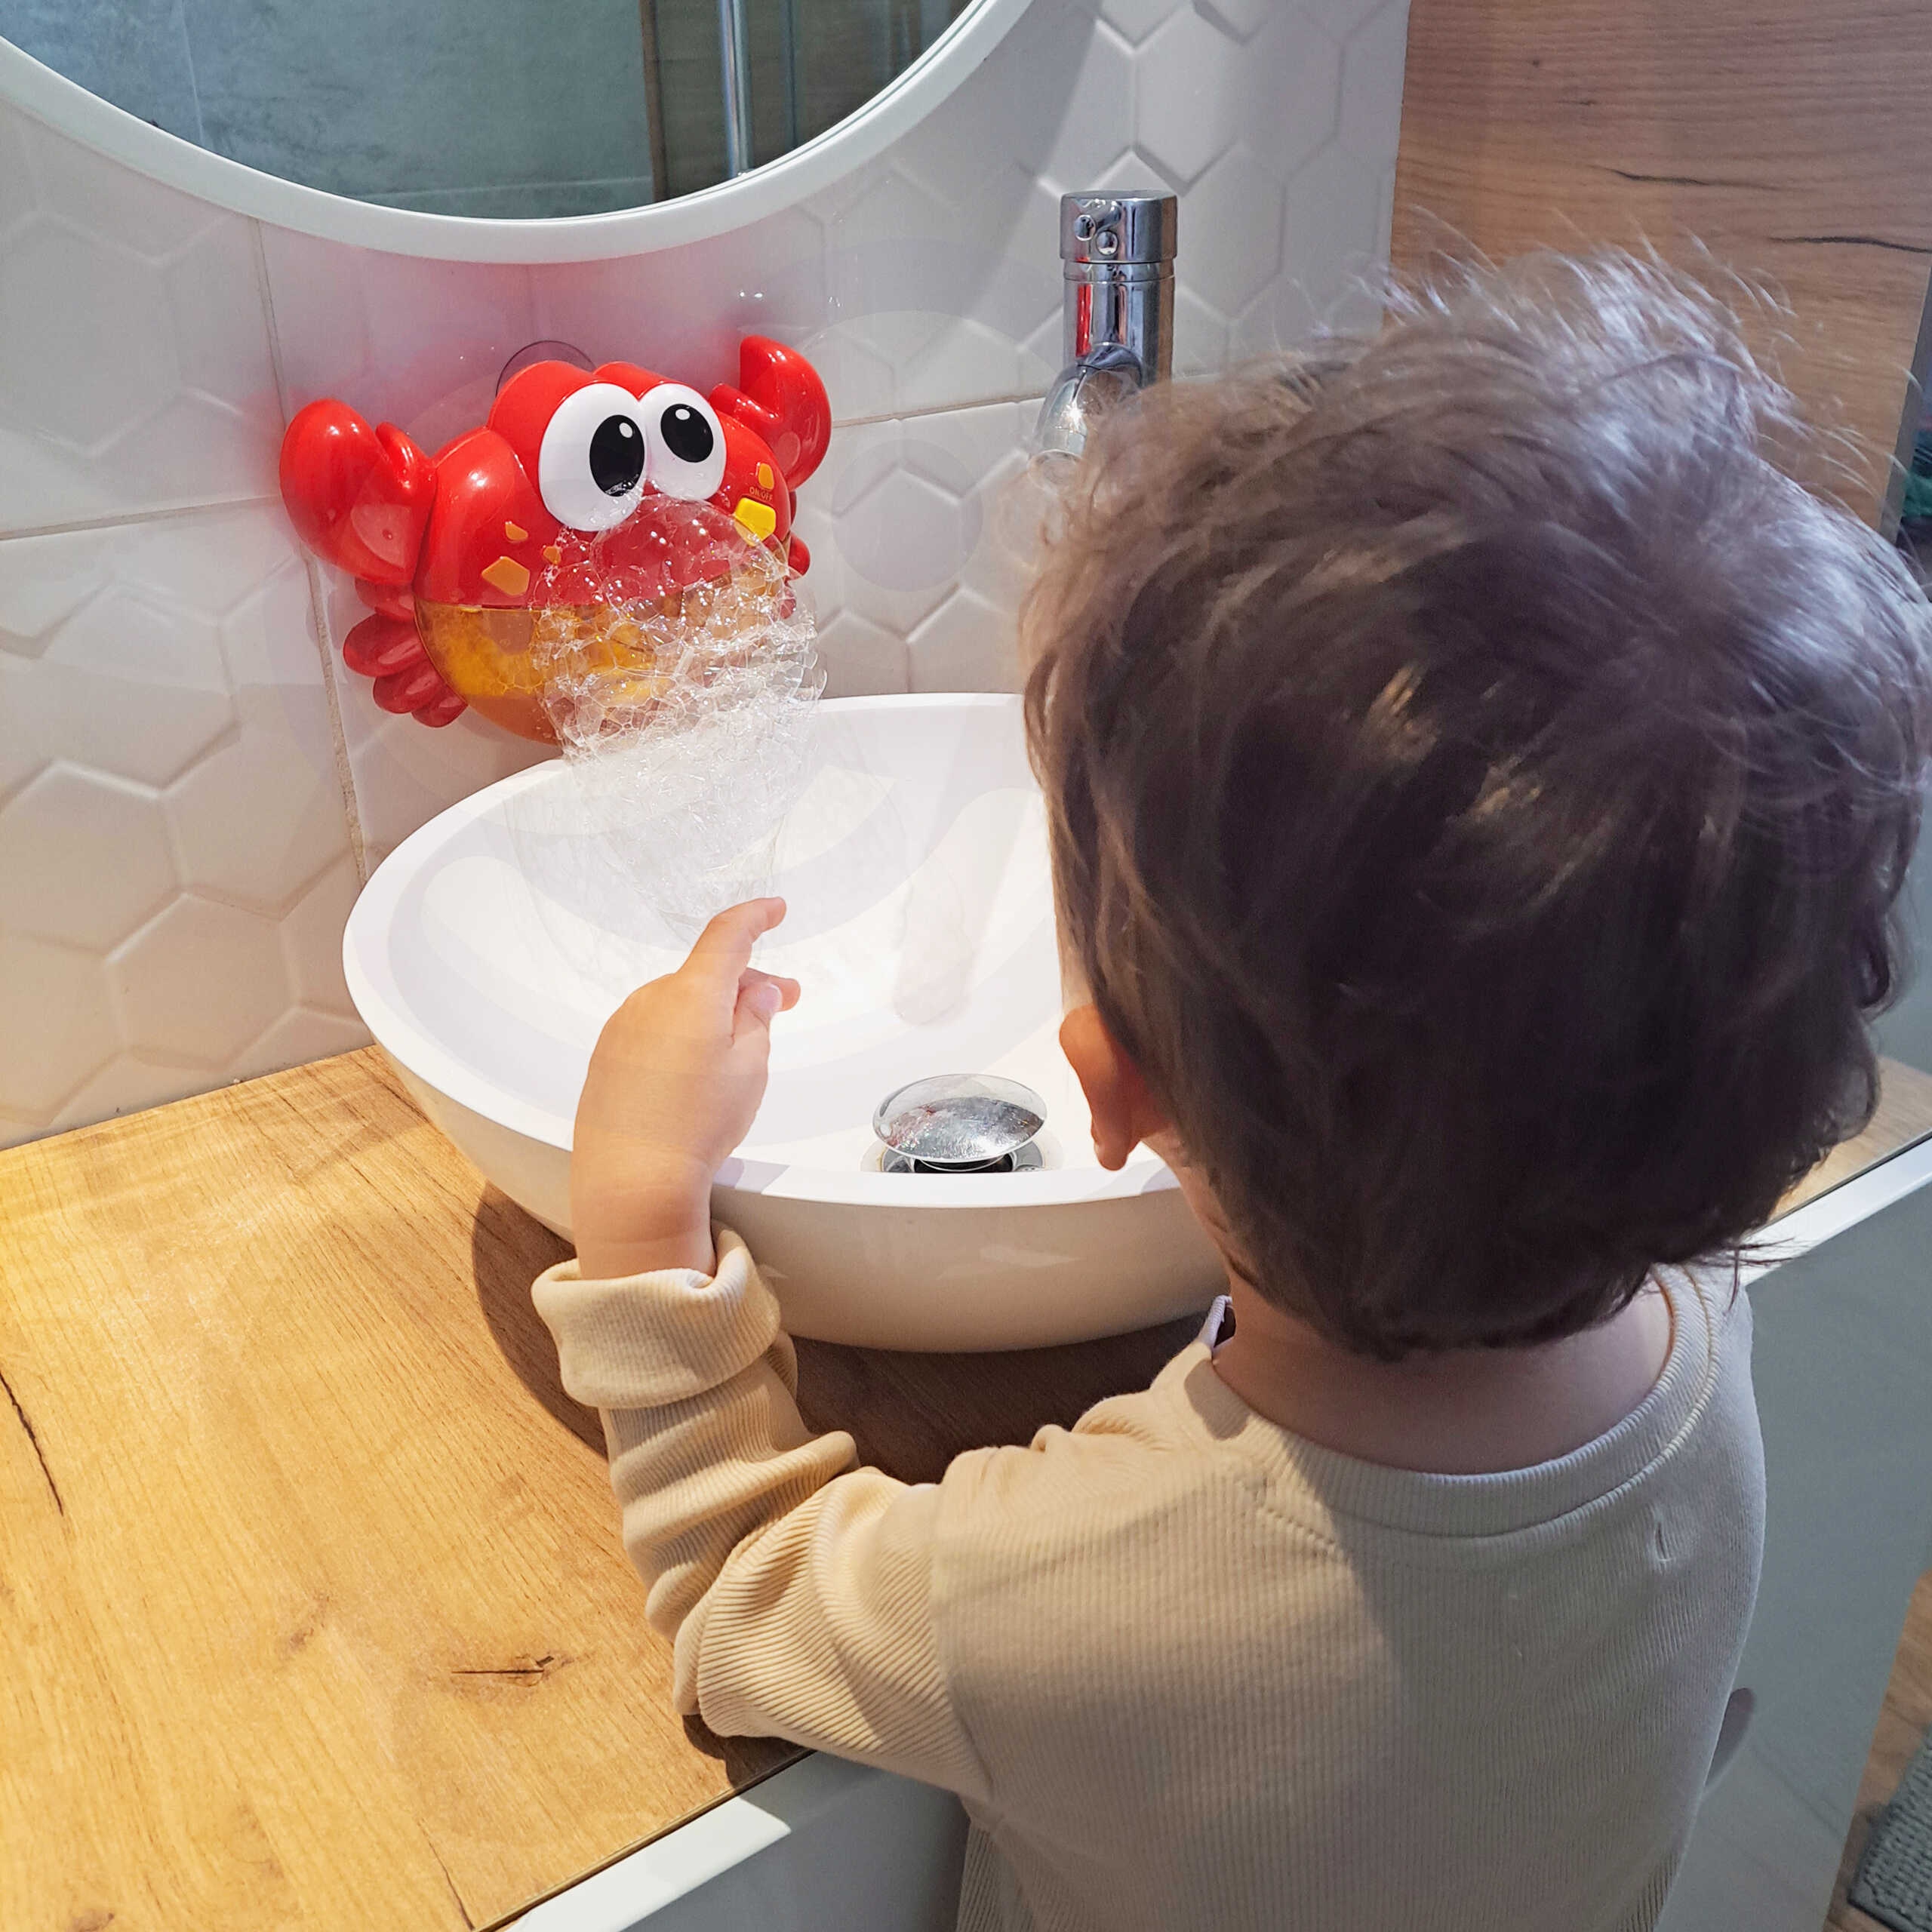 Baby zabawka do kąpieli krab do robienia piany z melodią - 10 szt., zabawka dla dzieci, Woopie